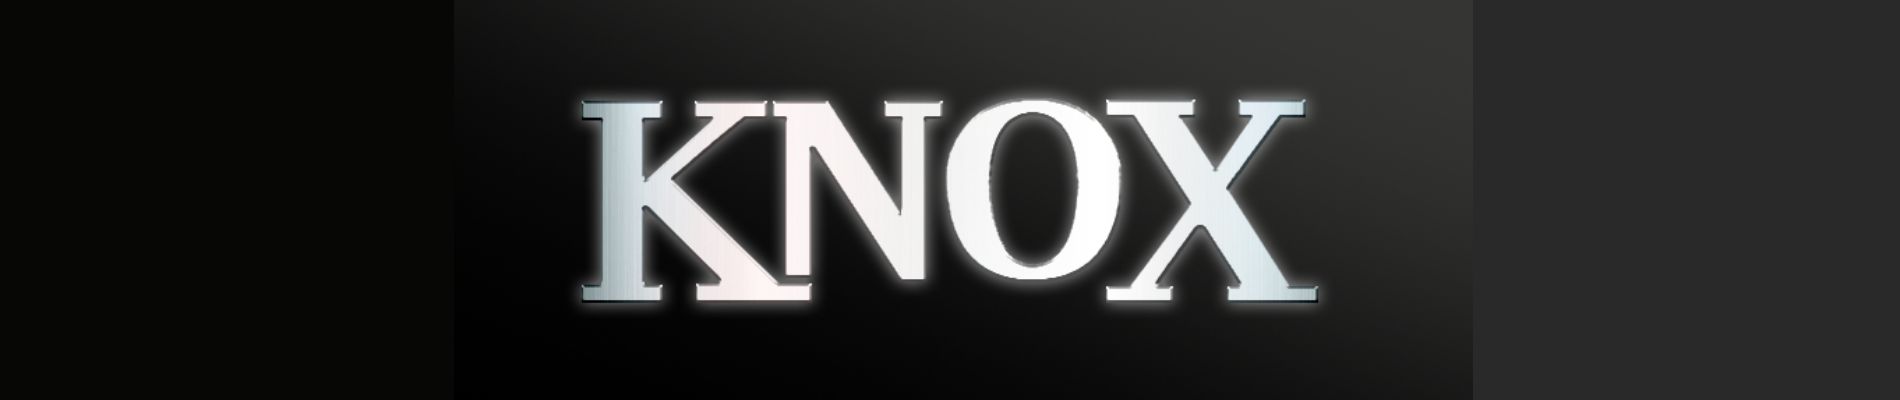 knox snus brand